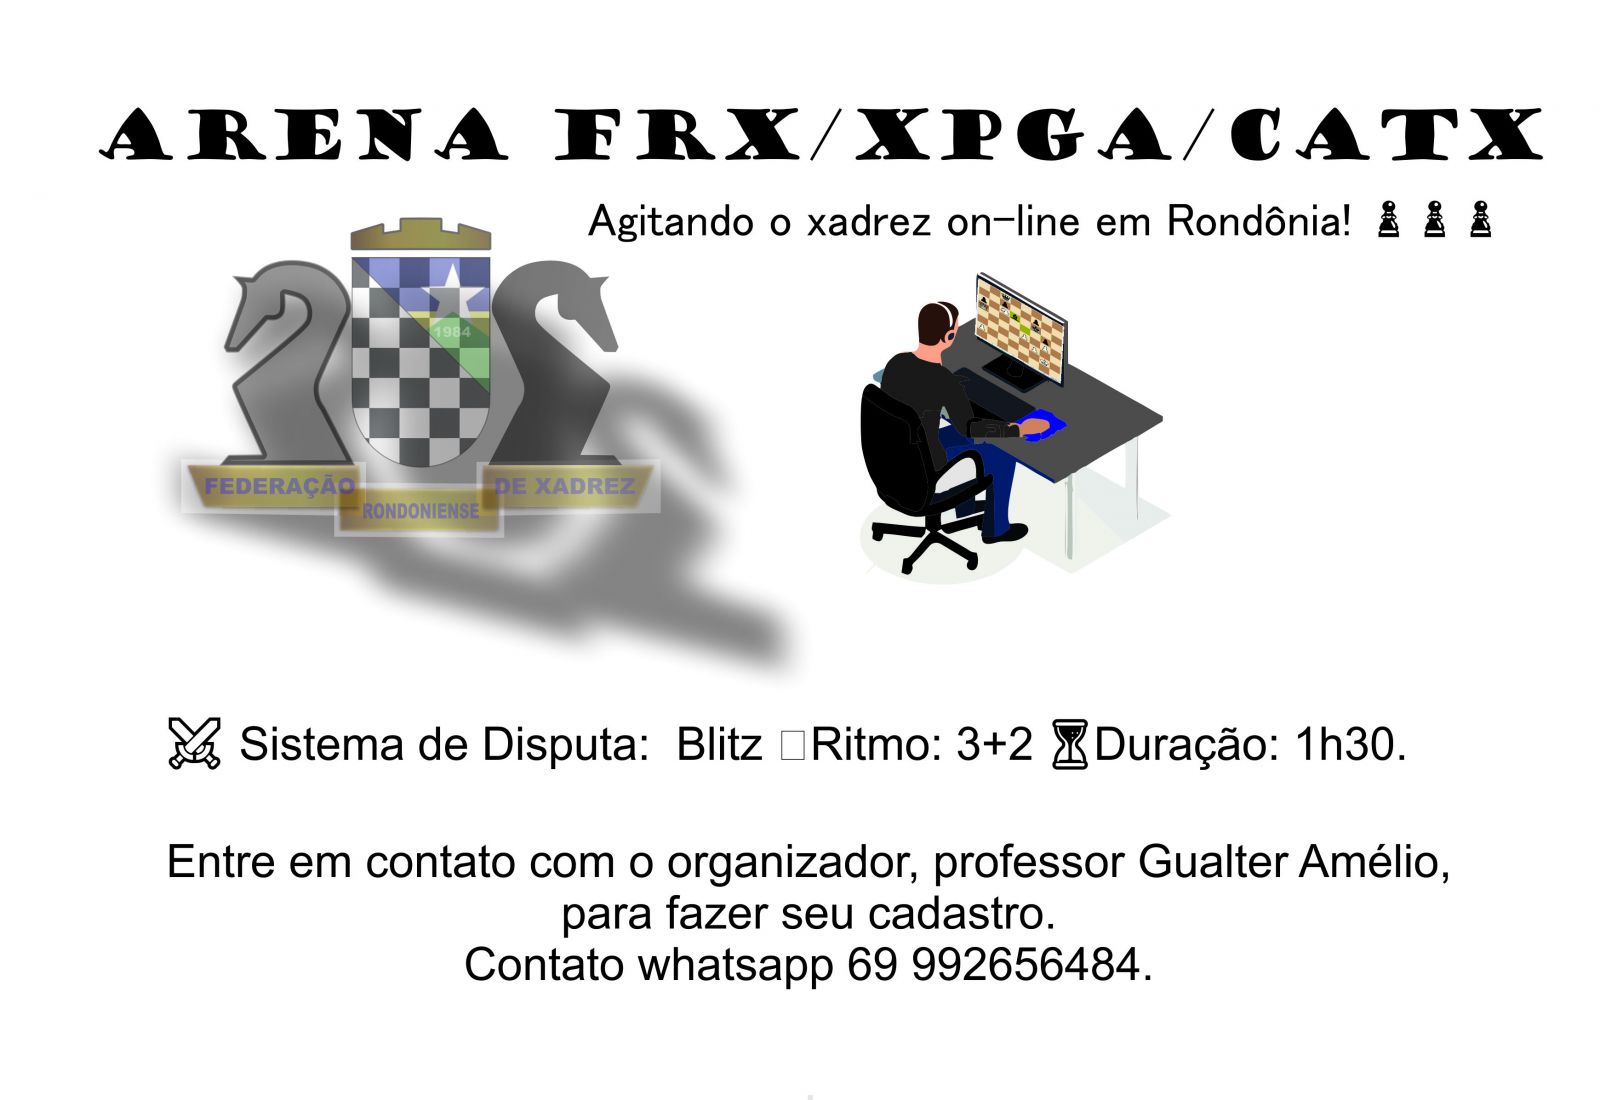 ARENA FRX/XPGA/CATX AGITAM O XADREZ ON-LINE EM RONDÔNIA - News Rondônia